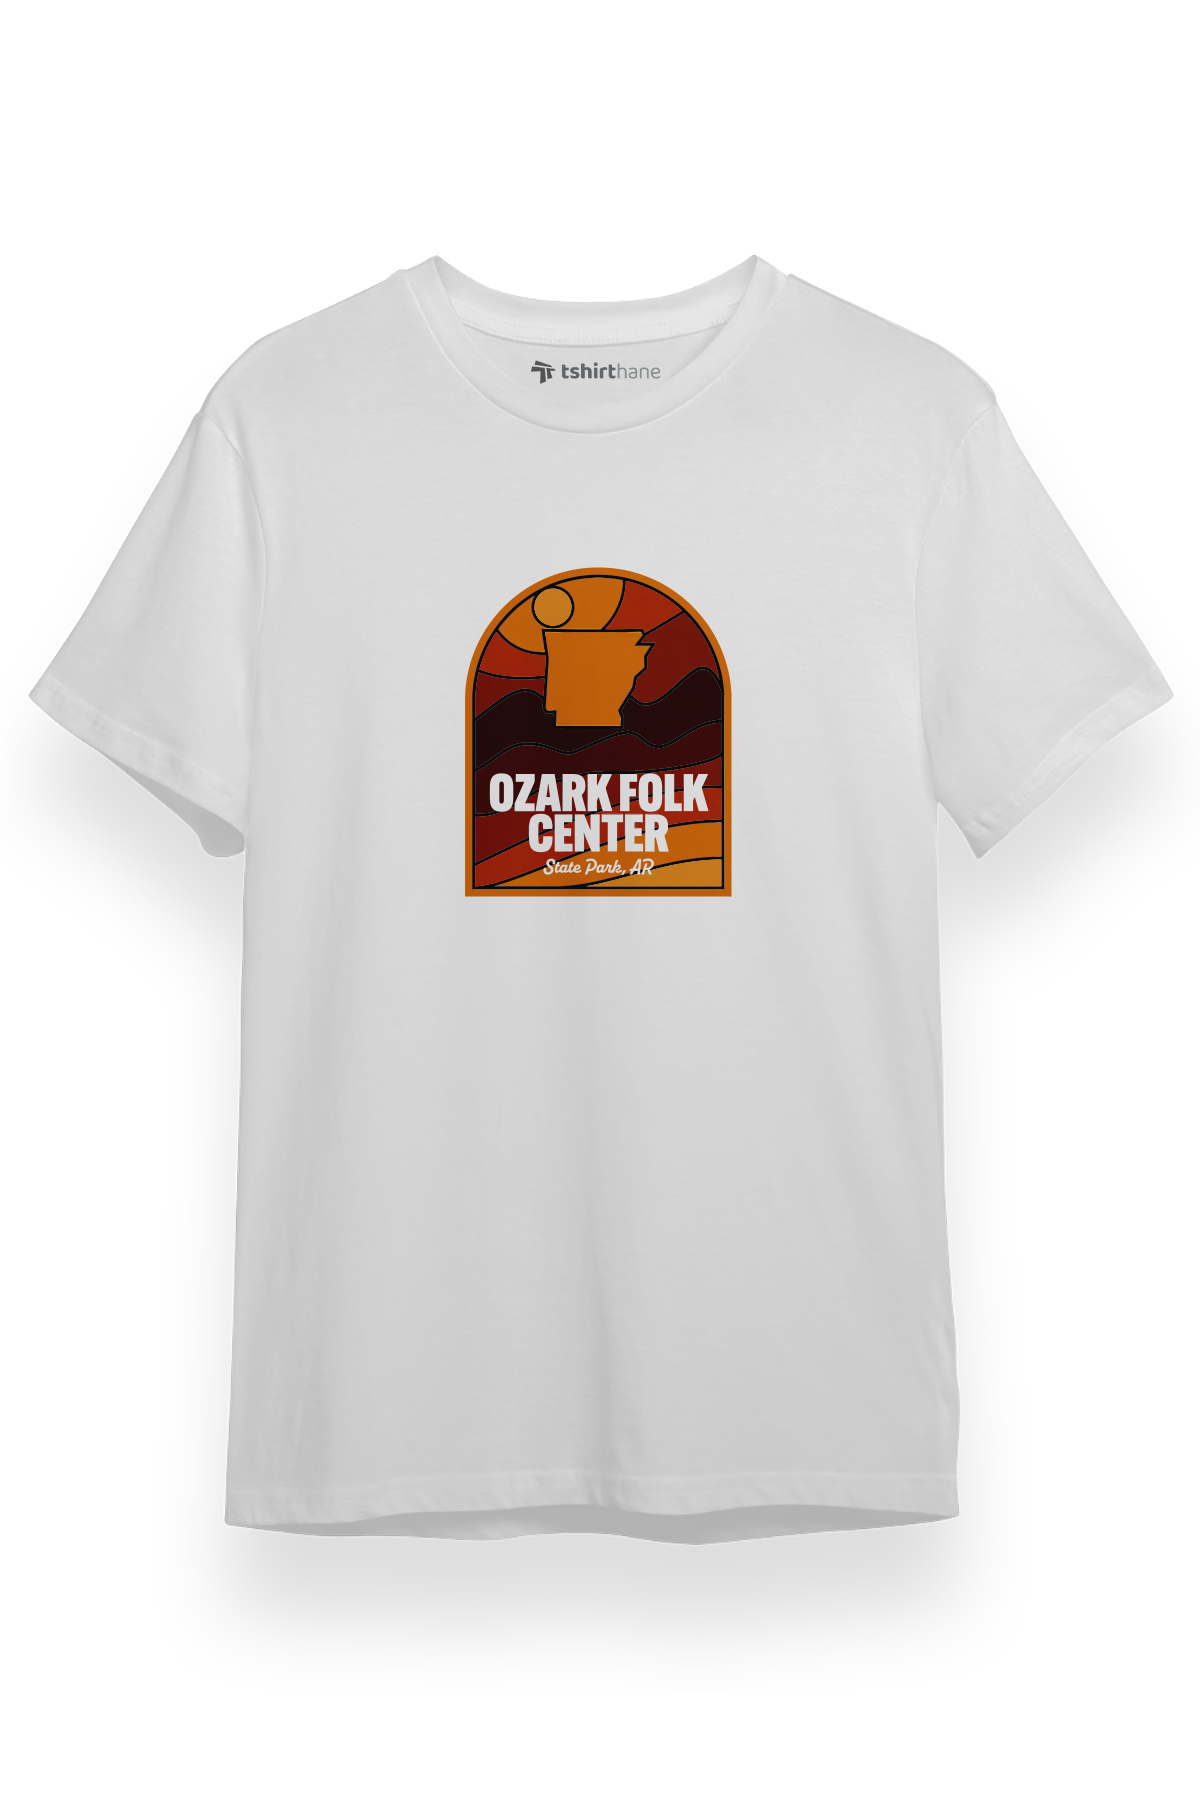 Ozark Folk Center Logo Beyaz Kısa kol Erkek Tshirt